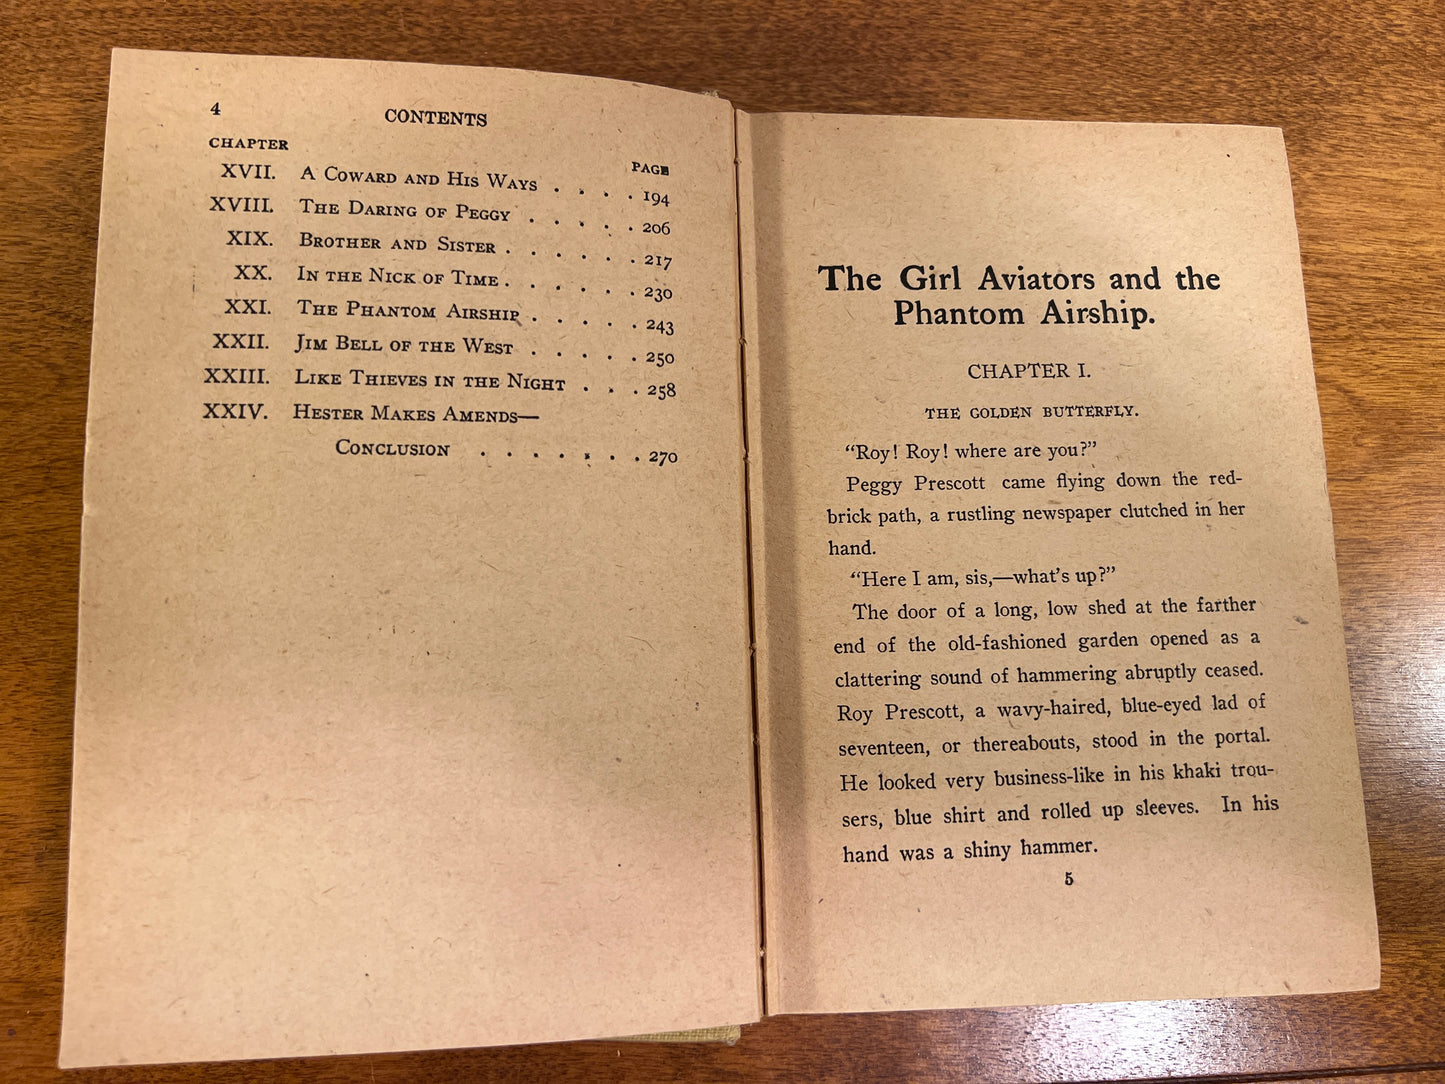 The Girl Aviators and the Phantom Airship by Margaret Burnham 1911